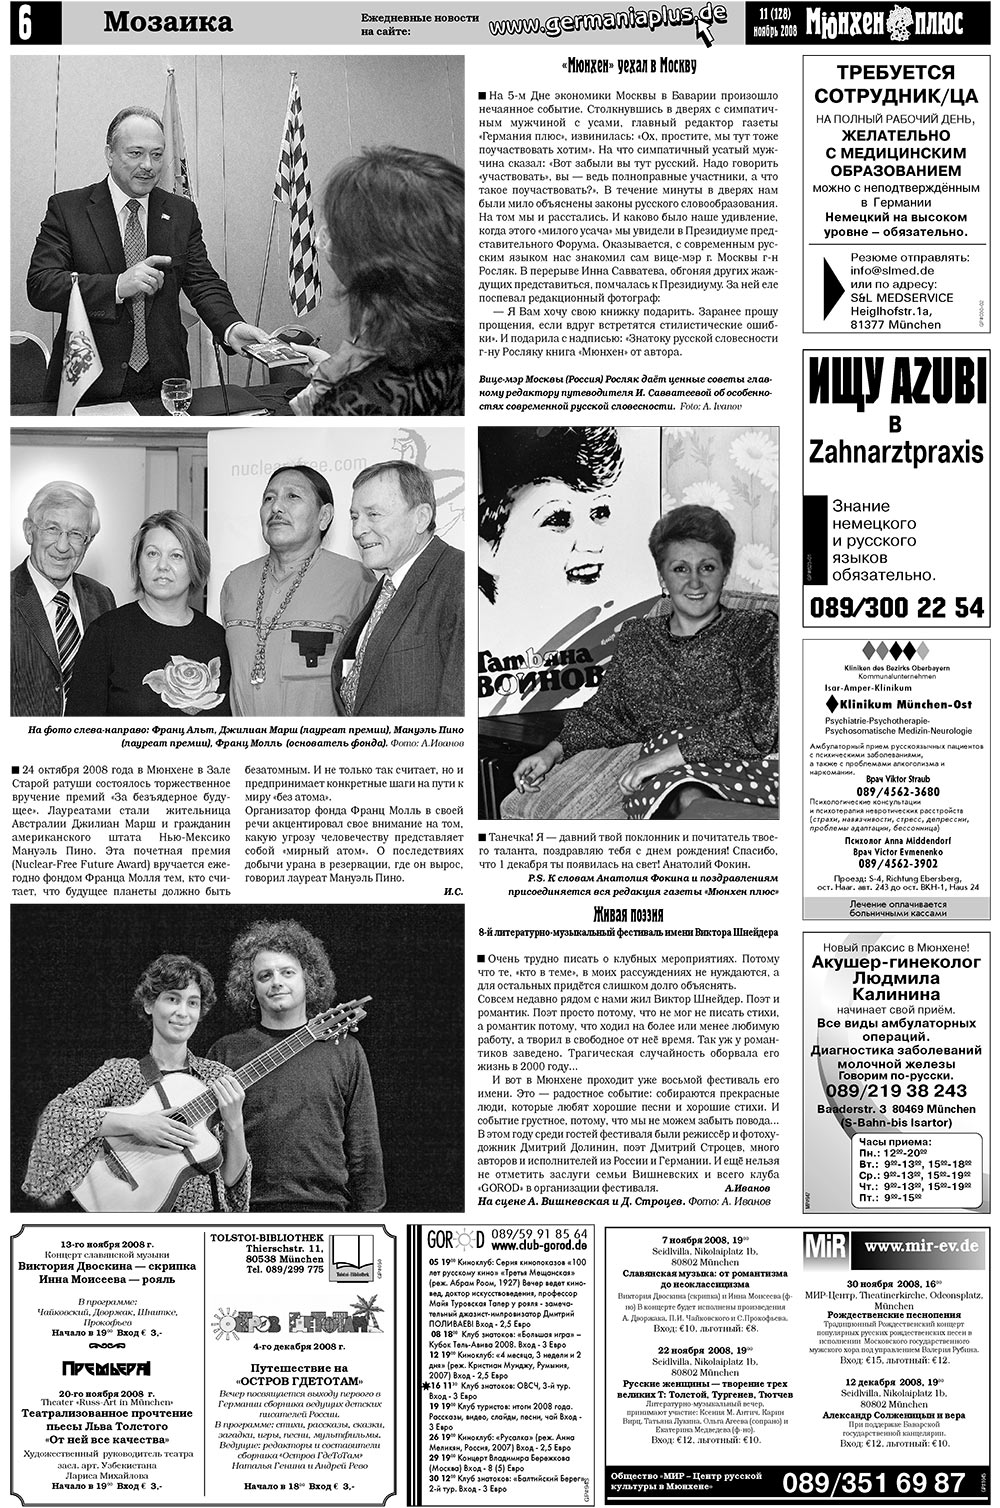 Германия плюс (газета). 2008 год, номер 11, стр. 8